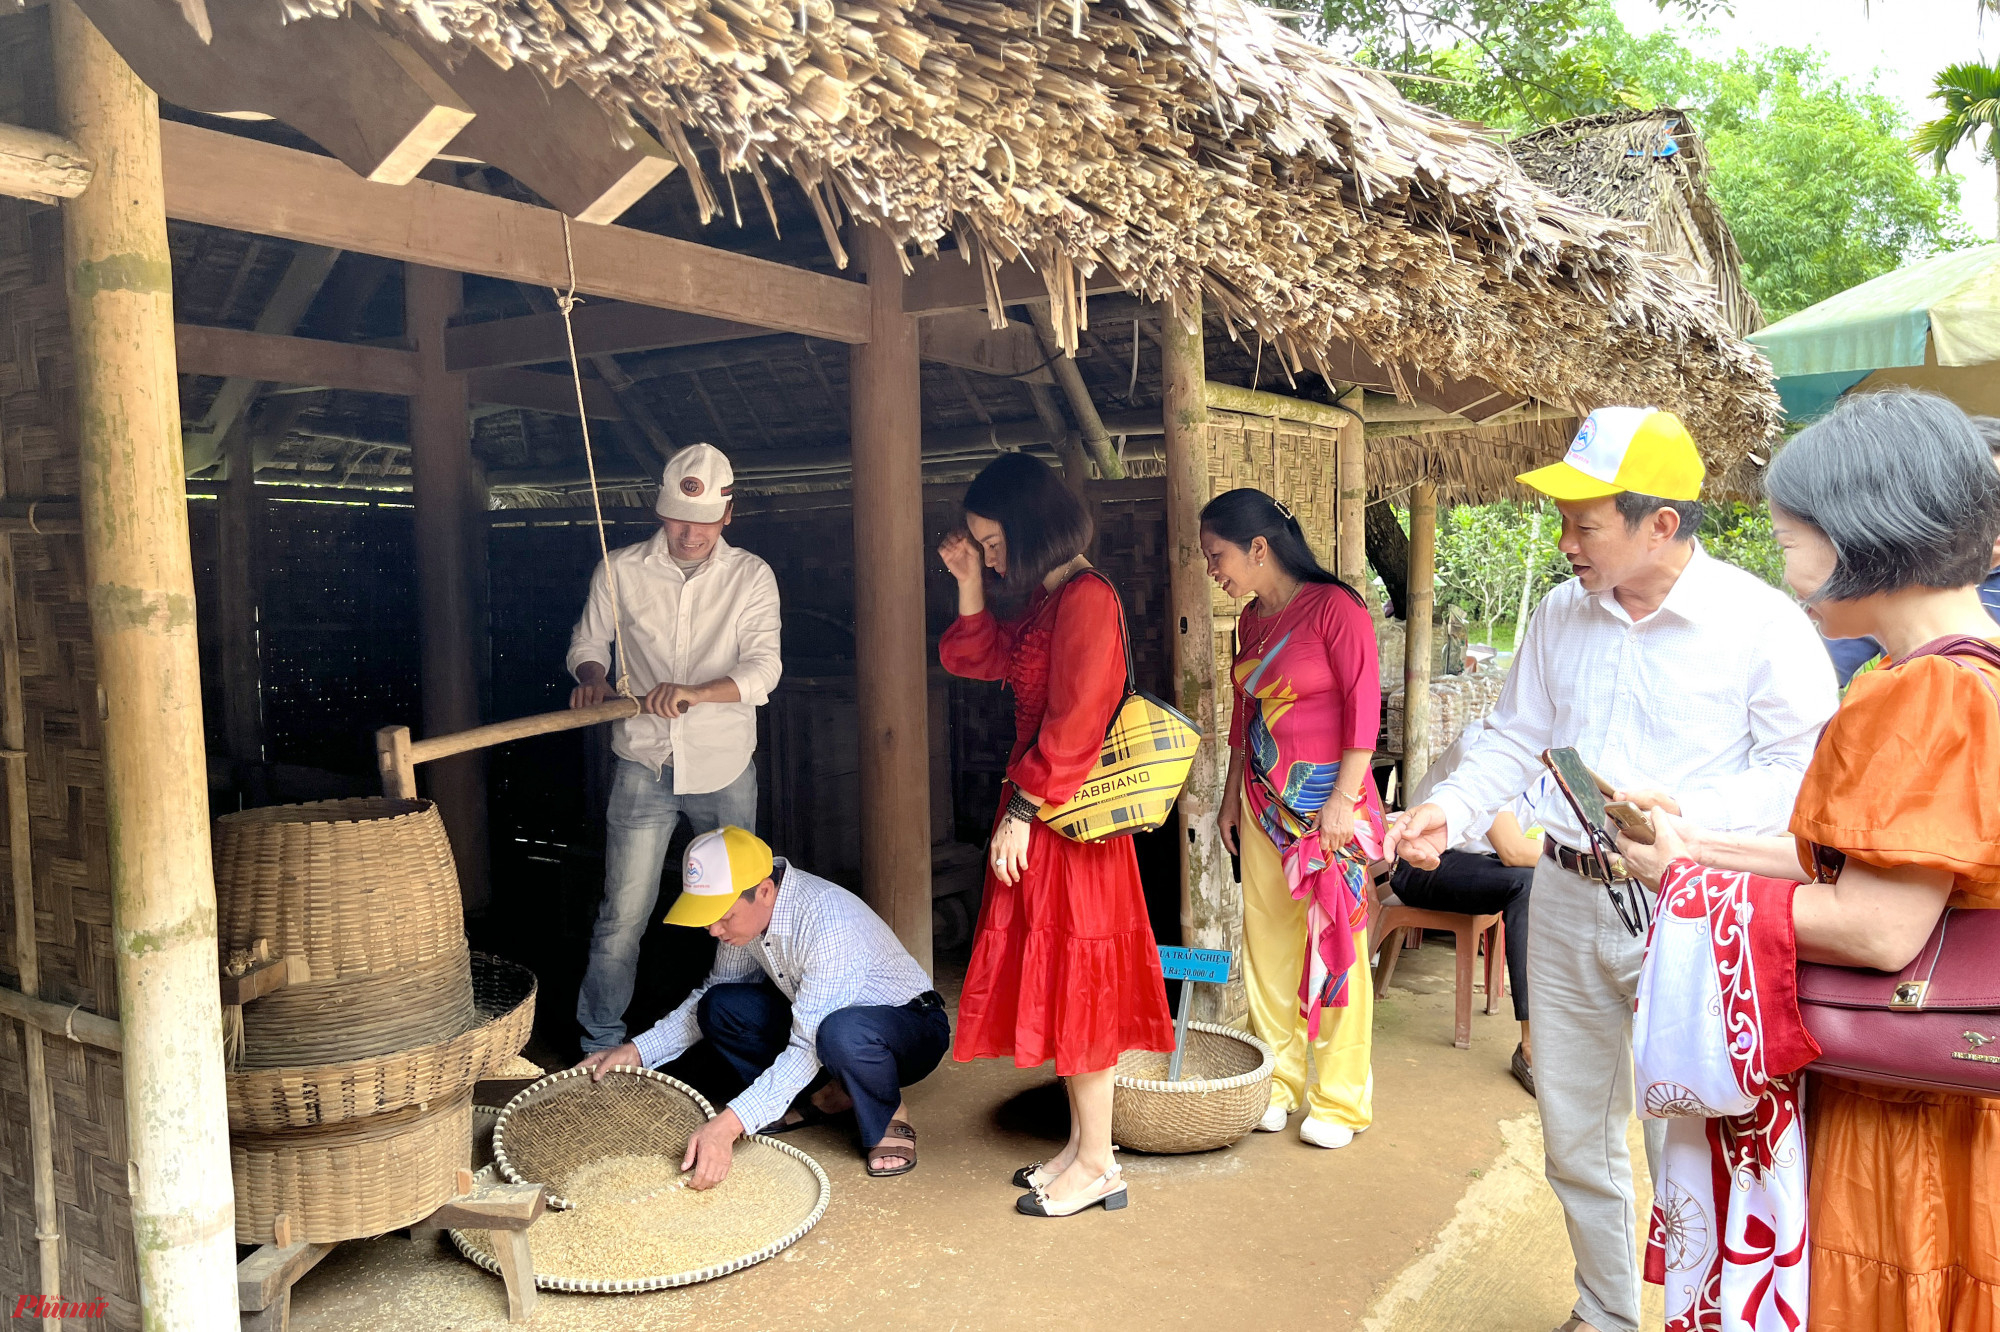 Không chỉ tìm hiểu thêm về thân thế, sự nghiệp của Chủ tịch Hồ Chí Minh, du khách khi đến đây còn được trải nghiệm nhiều hoạt động sản xuất bằng những công cụ thô sơ như xay lúa, giã gạo…